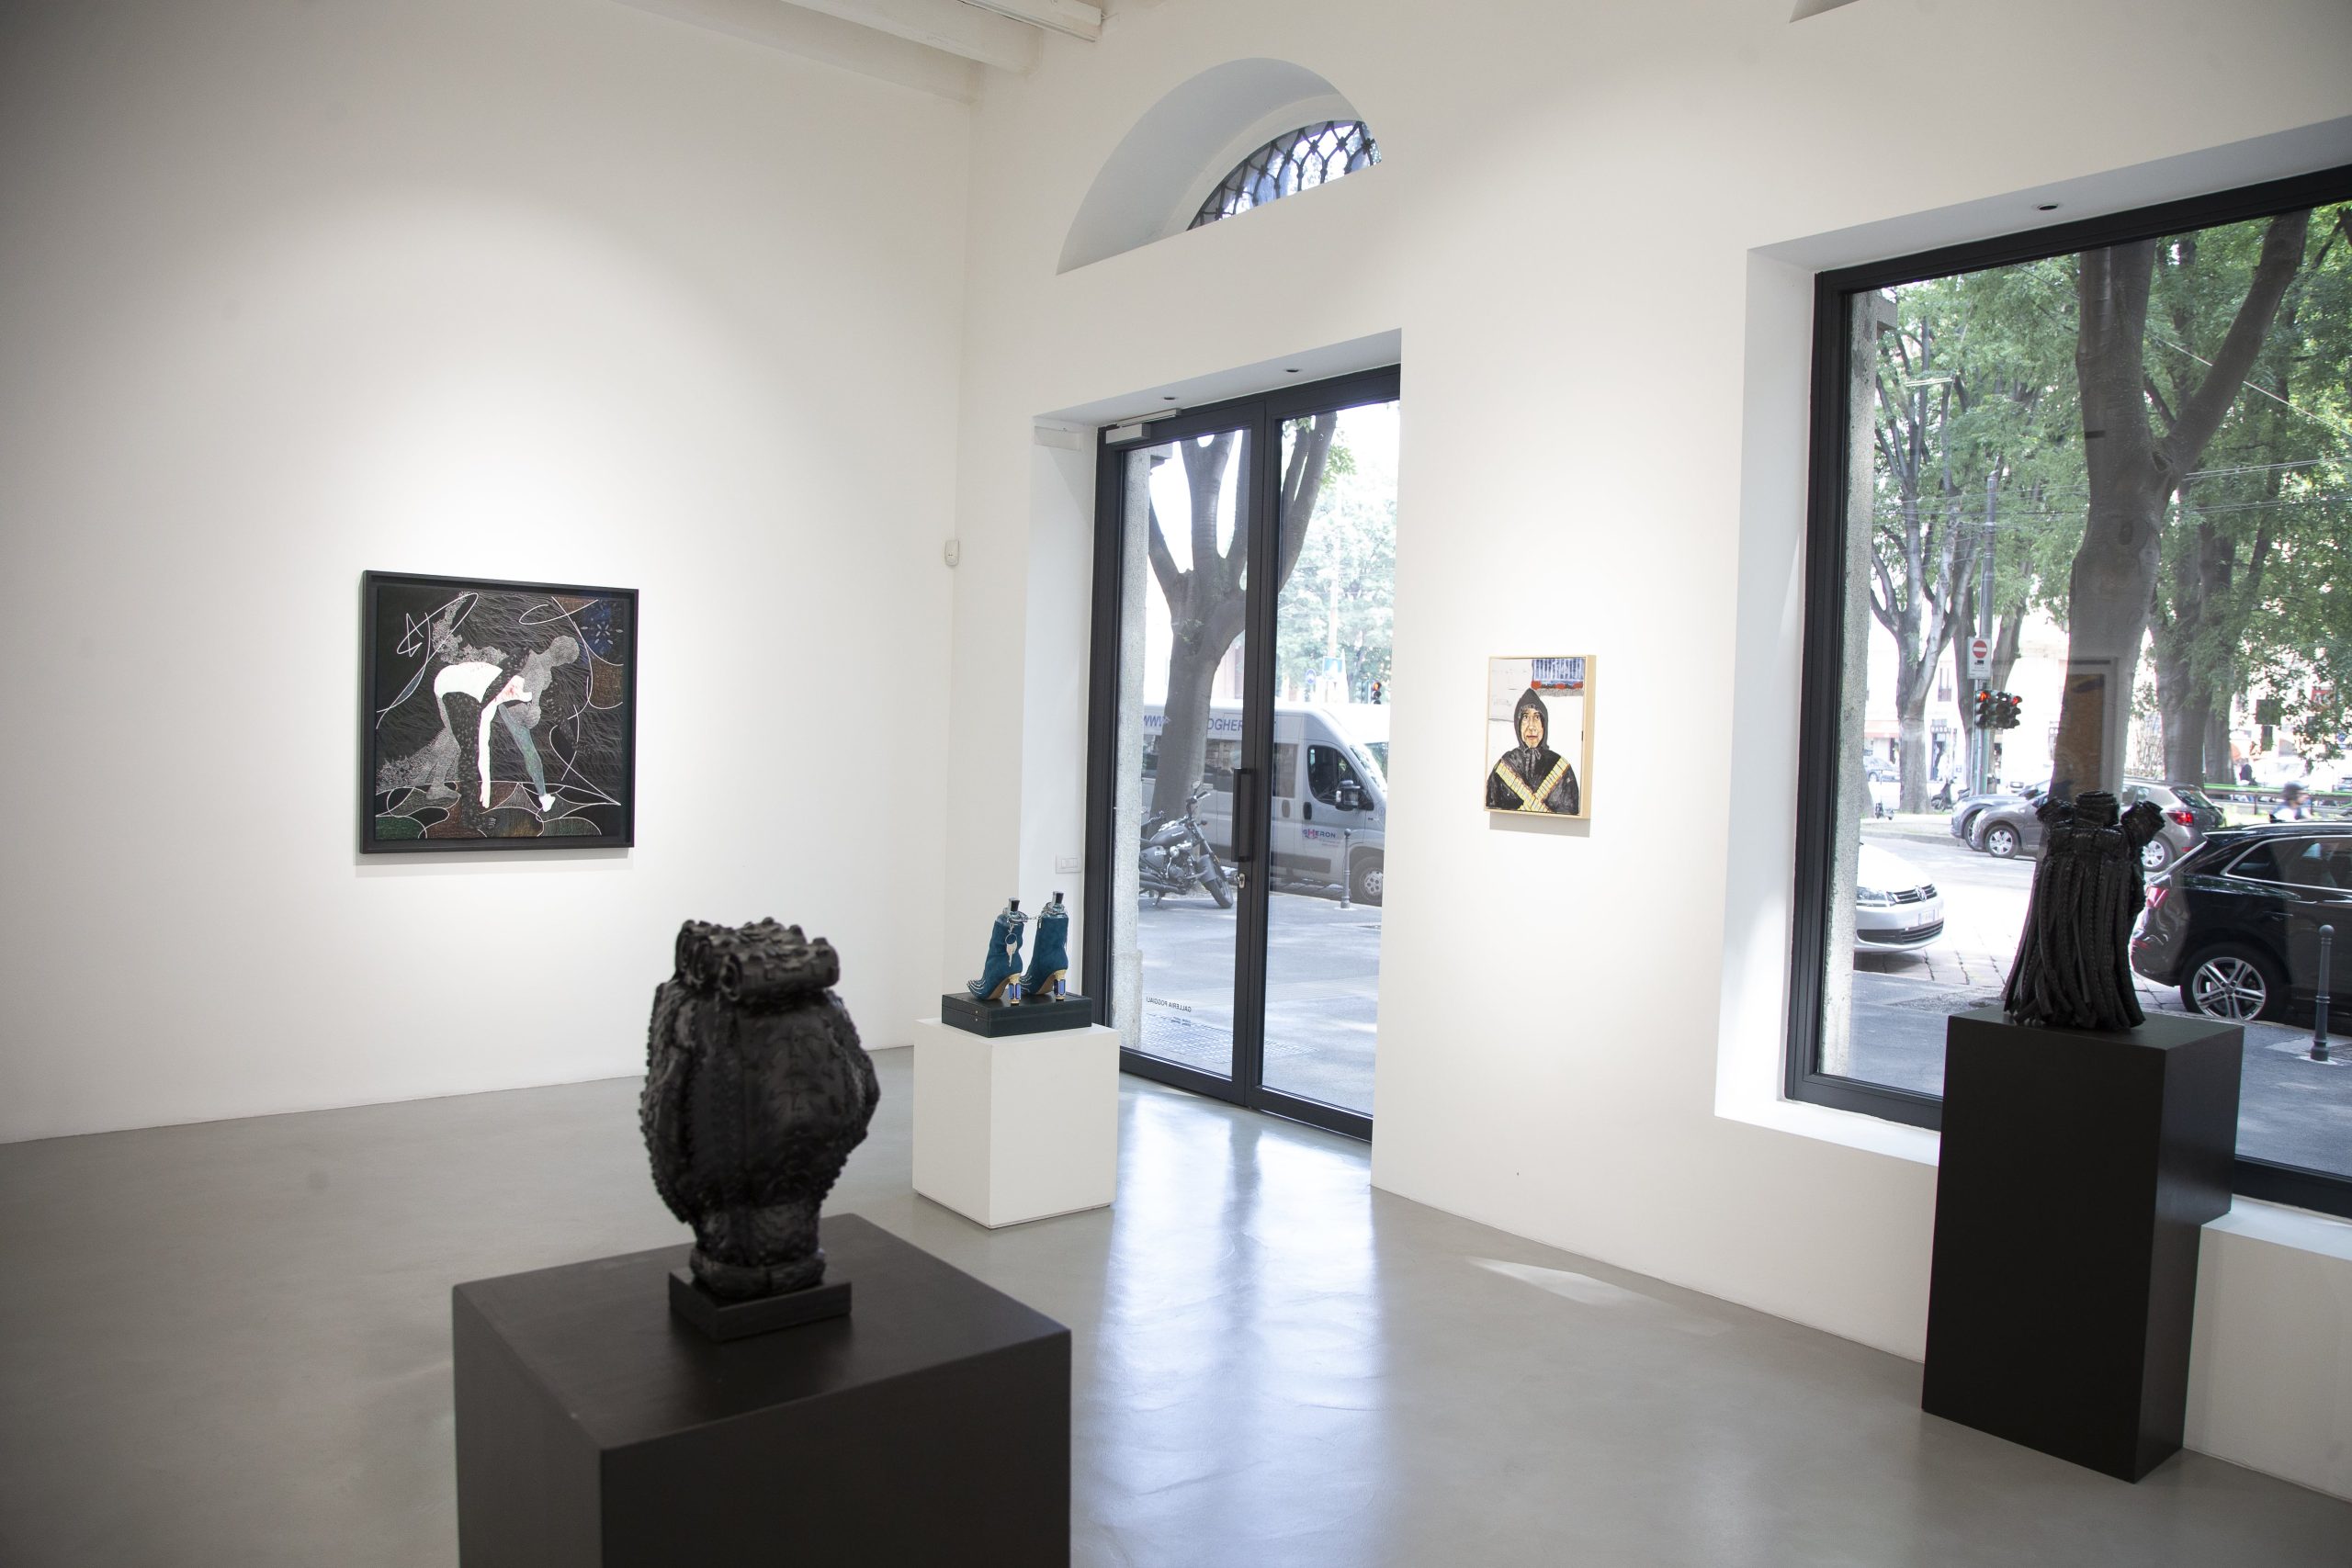 Perdere e ritrovarsi, a Milano: la collettiva pittorico-installativa alla Galleria Poggiali